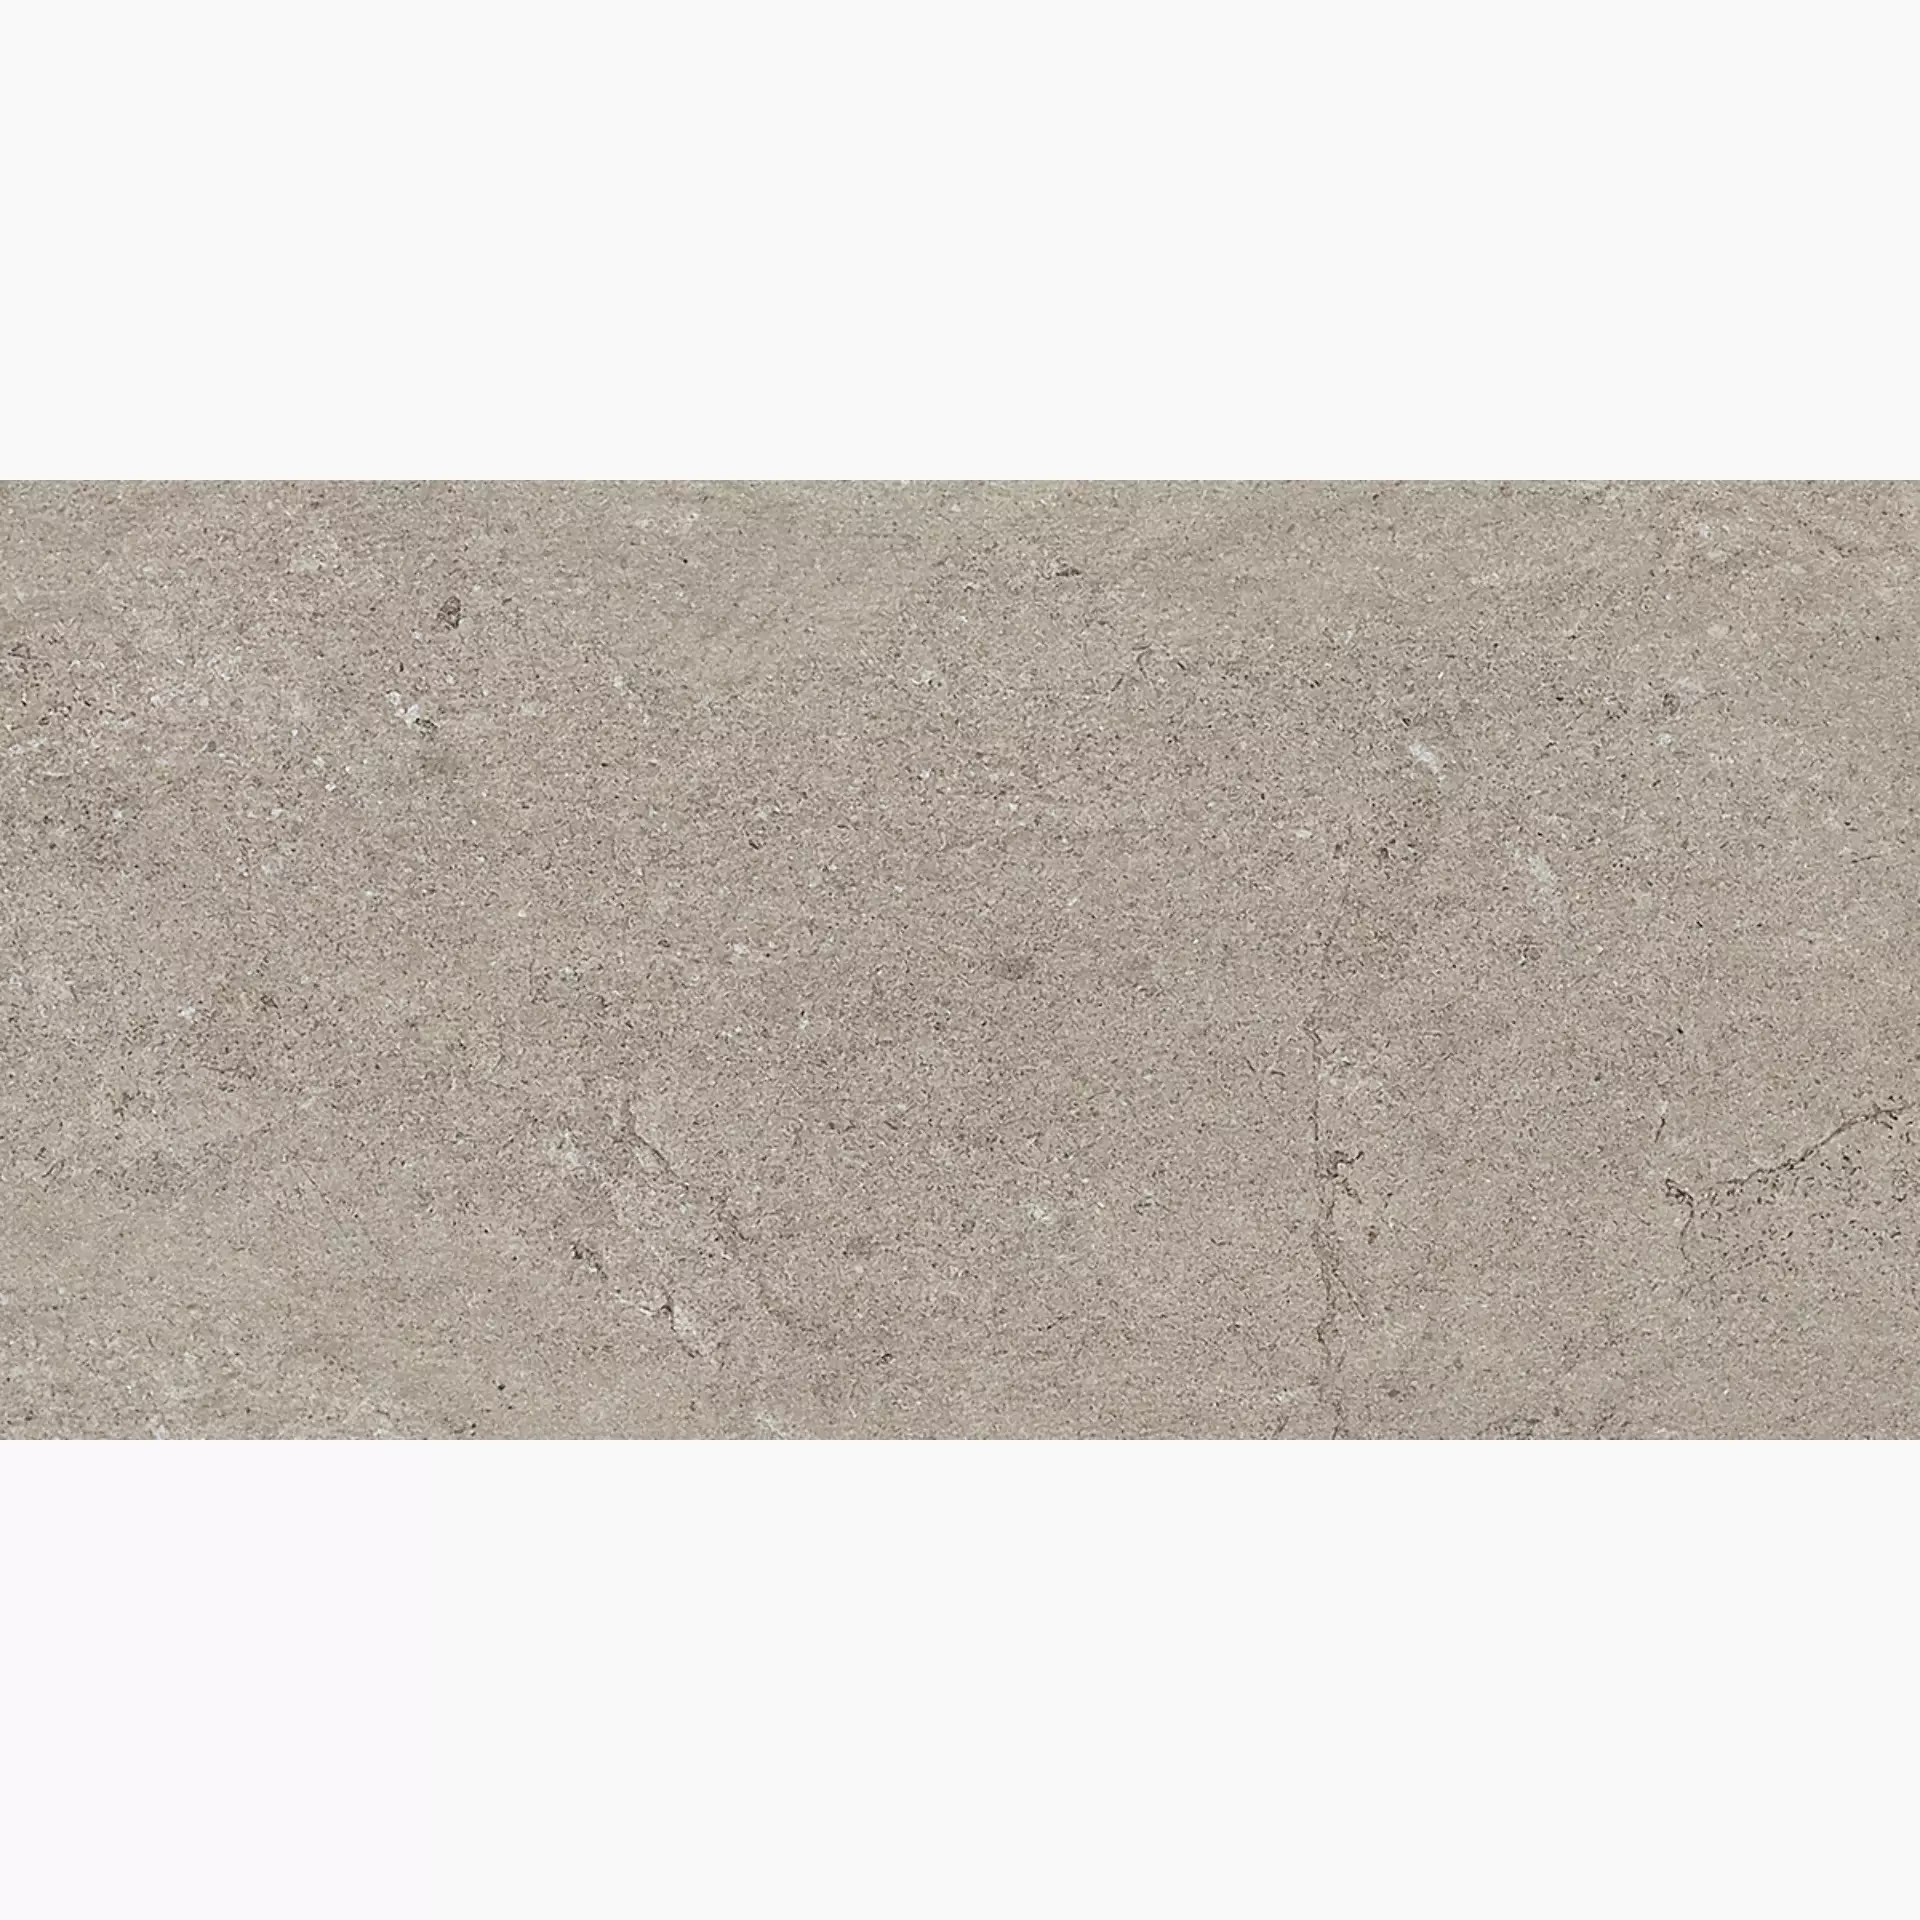 Gigacer Quarry Gravel Stone Bocciardato 12QUAGRASTBOC3060 30x60cm 12mm